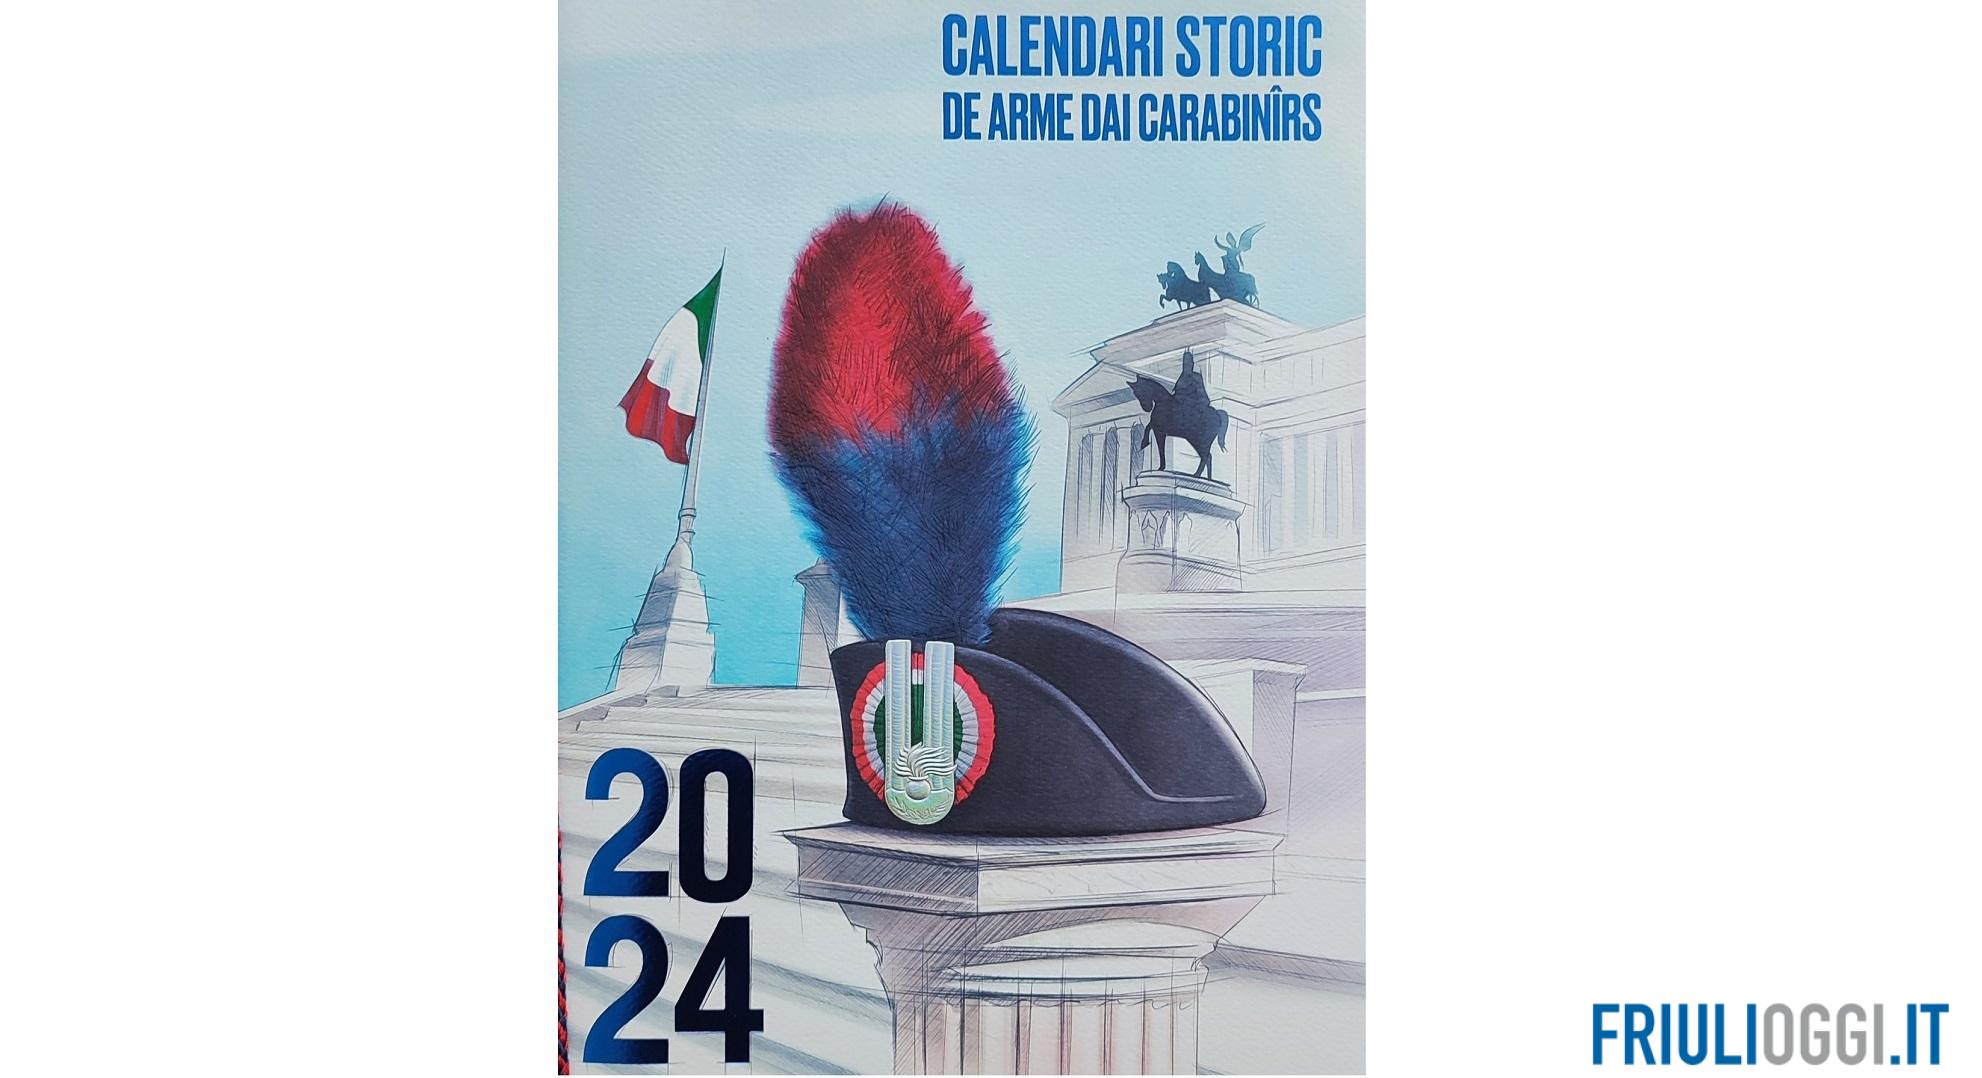 Il Calendario storico dei Carabinieri in lingua friulana - ARLeF